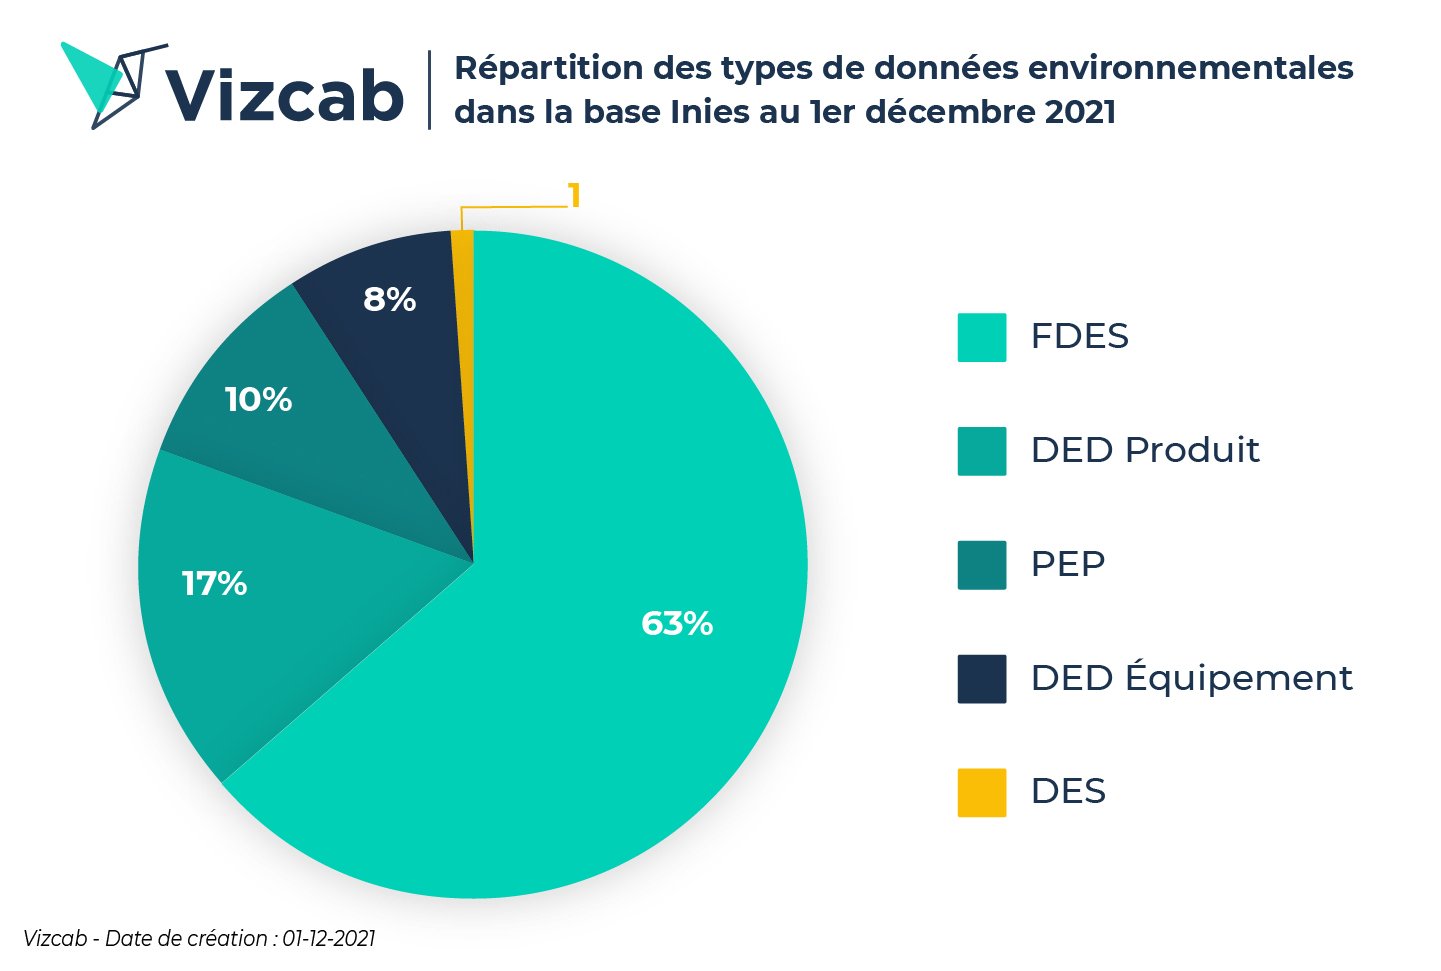 Vizcab - Répartition des types de données environnementales dans la base Inies au 1er décembre 2021